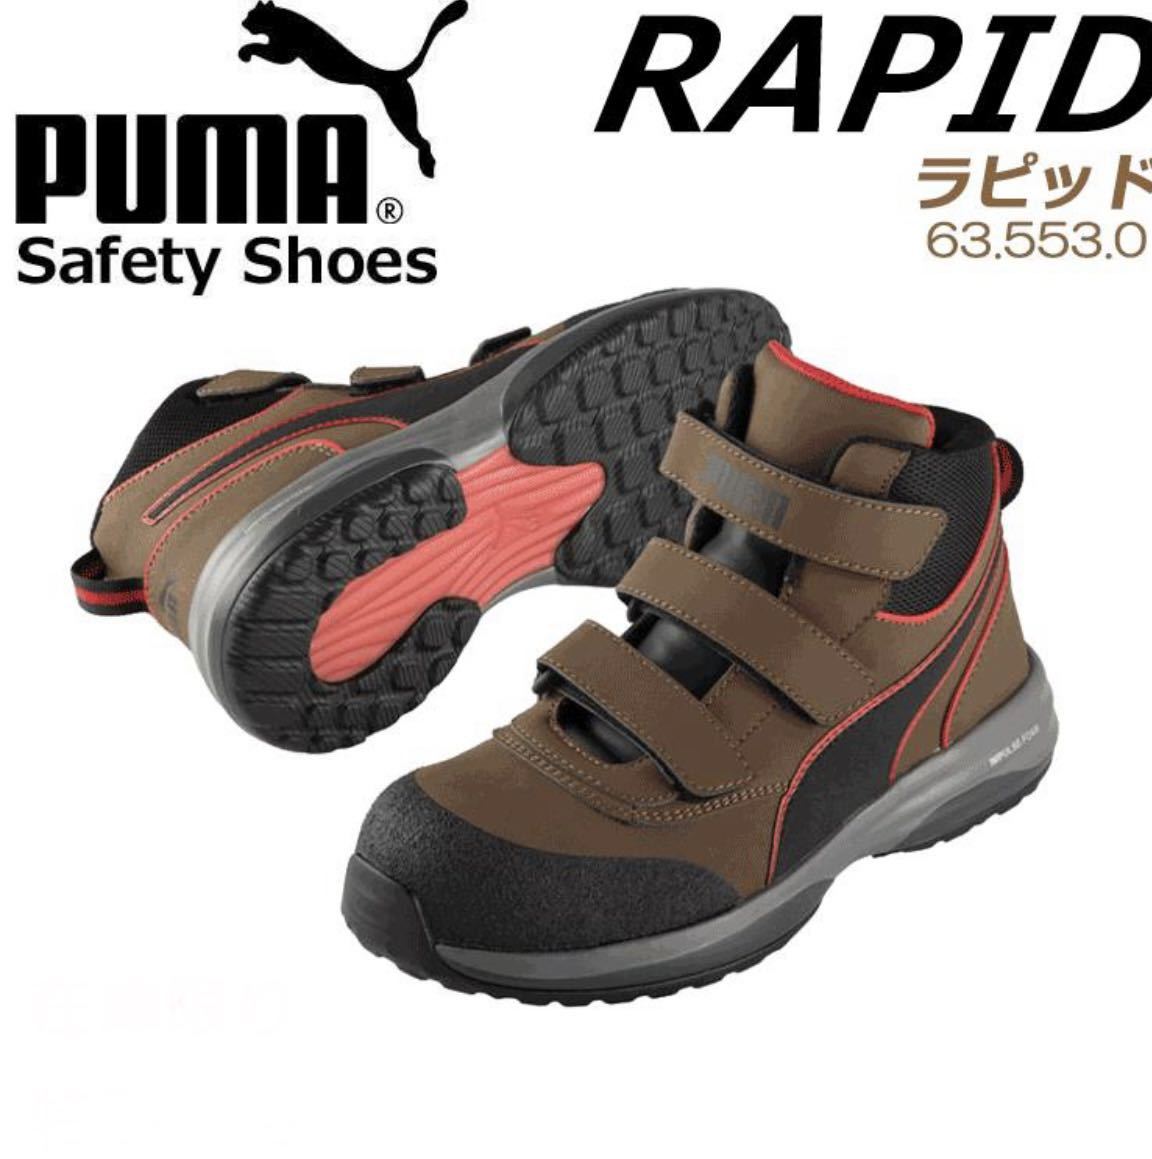 プーマ ラピッド 安全靴 新品 28cm ブラウン ミッドジップ PUMA 耐油 耐熱 生産終了 完売品 送料無料 送料込み 売り出し値下